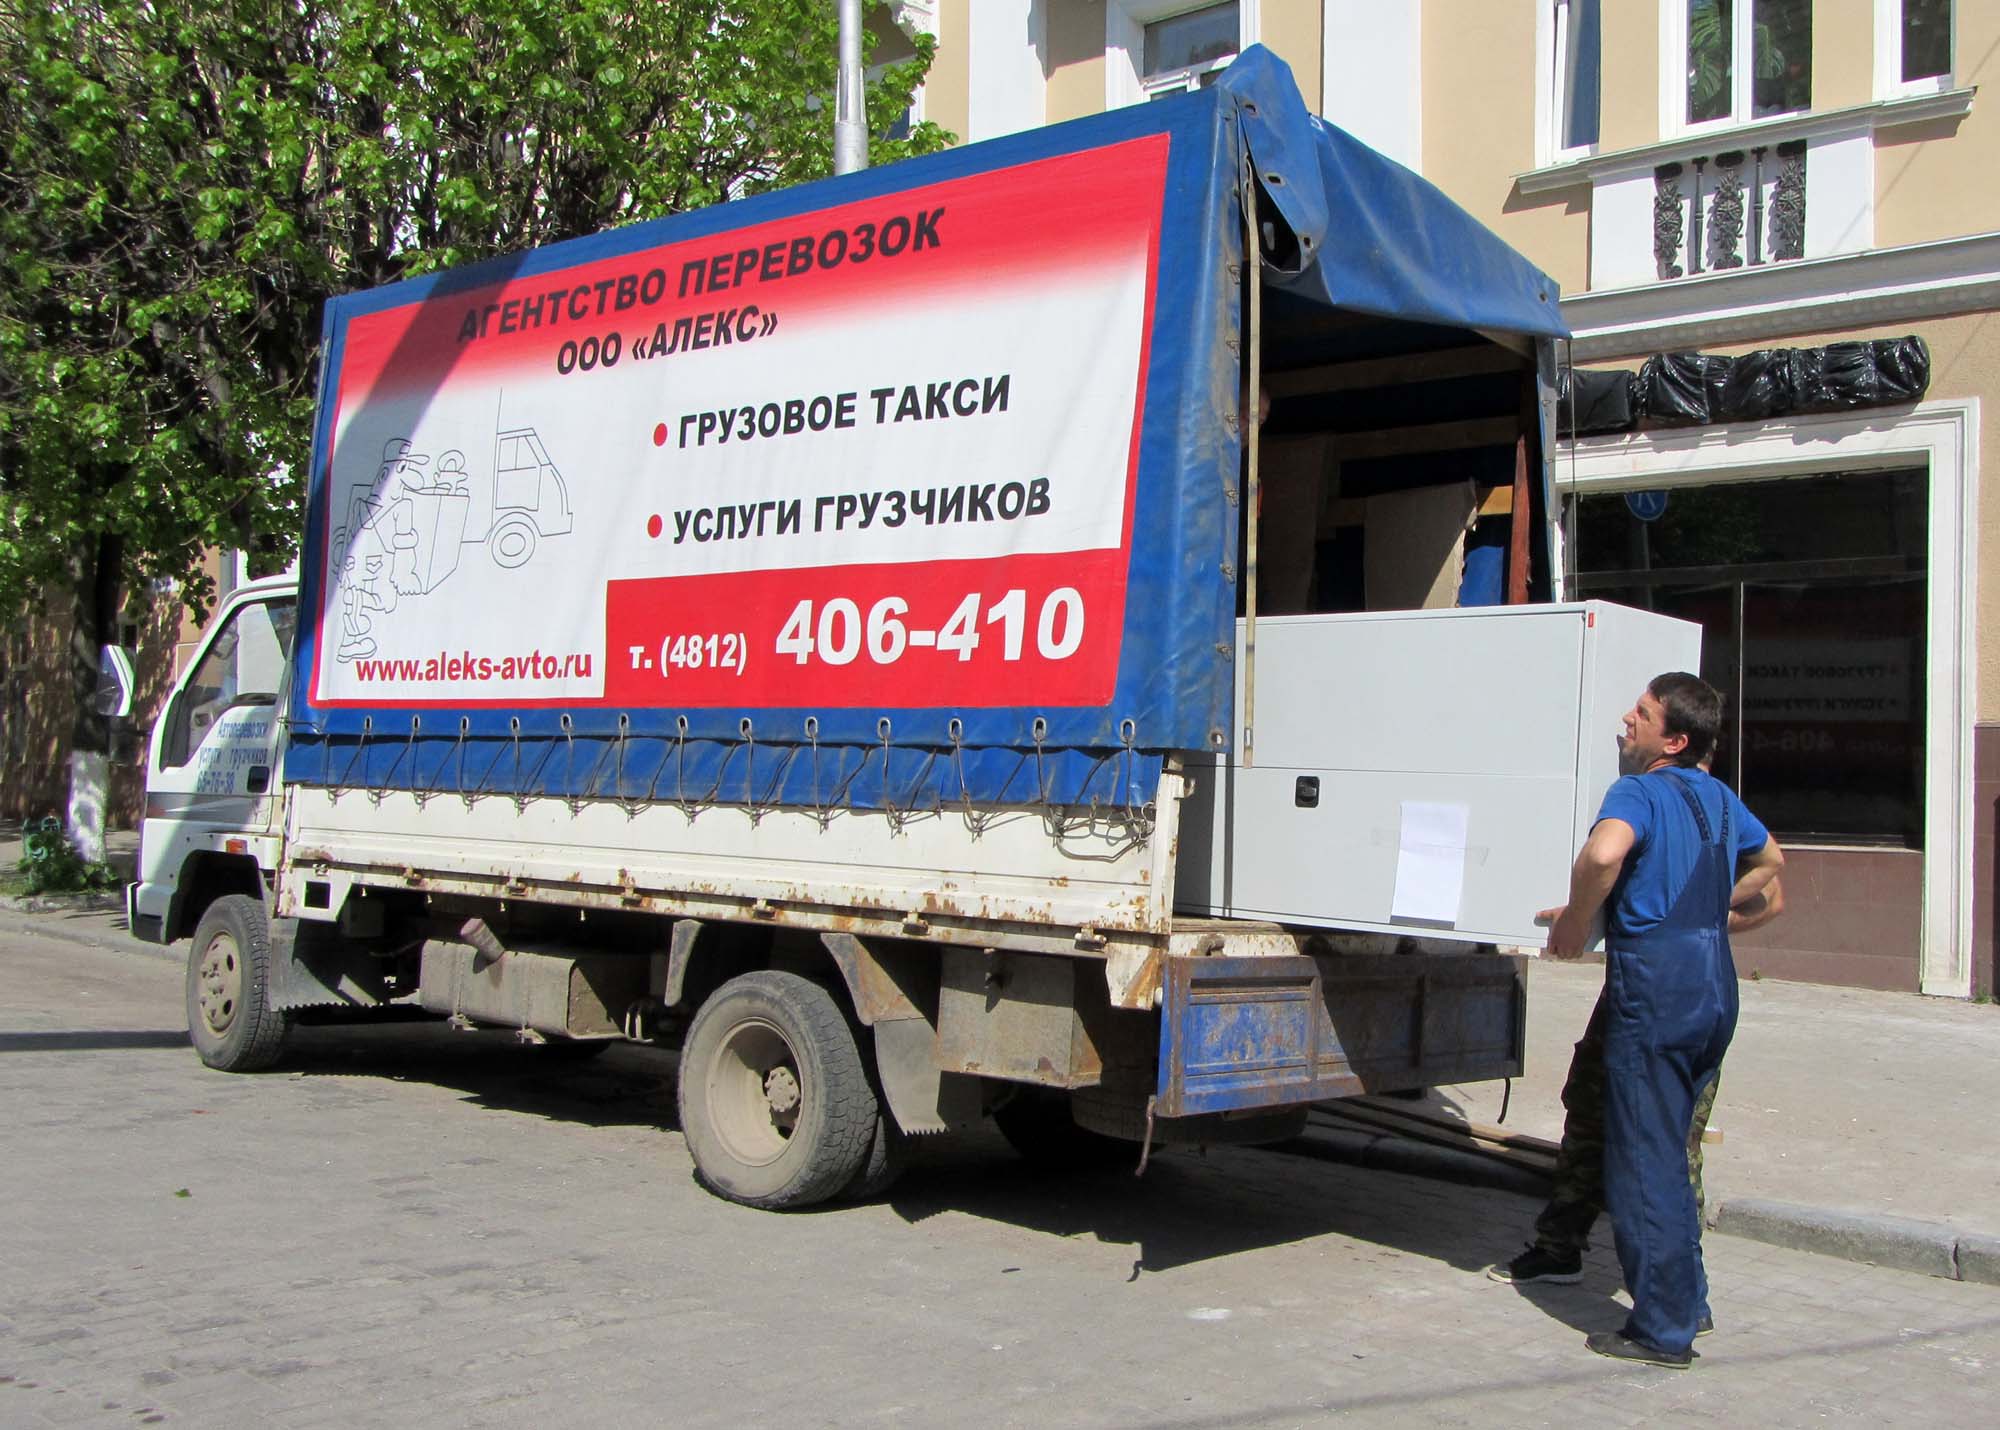 Грузовое такси, услуги грузчиков АЛЕКС ООО в городе Смоленск, фото 1, стоимость: 400 руб.